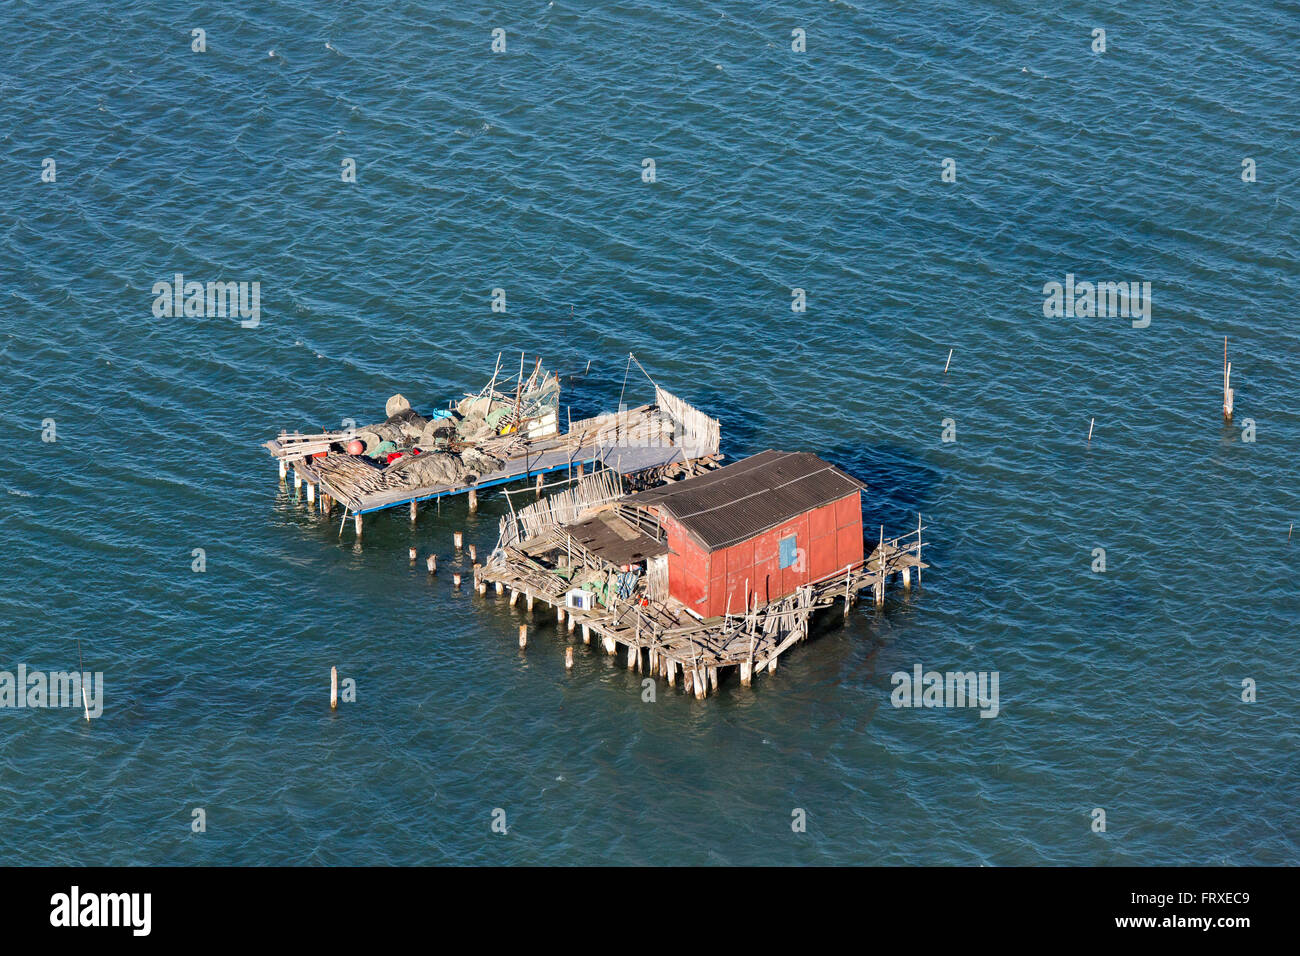 Vue aérienne des îles de la lagune vénitienne, cabanes de pêcheurs sur pilotis, Pellestrina, Mer Méditerranée, Veneto, Italie Banque D'Images